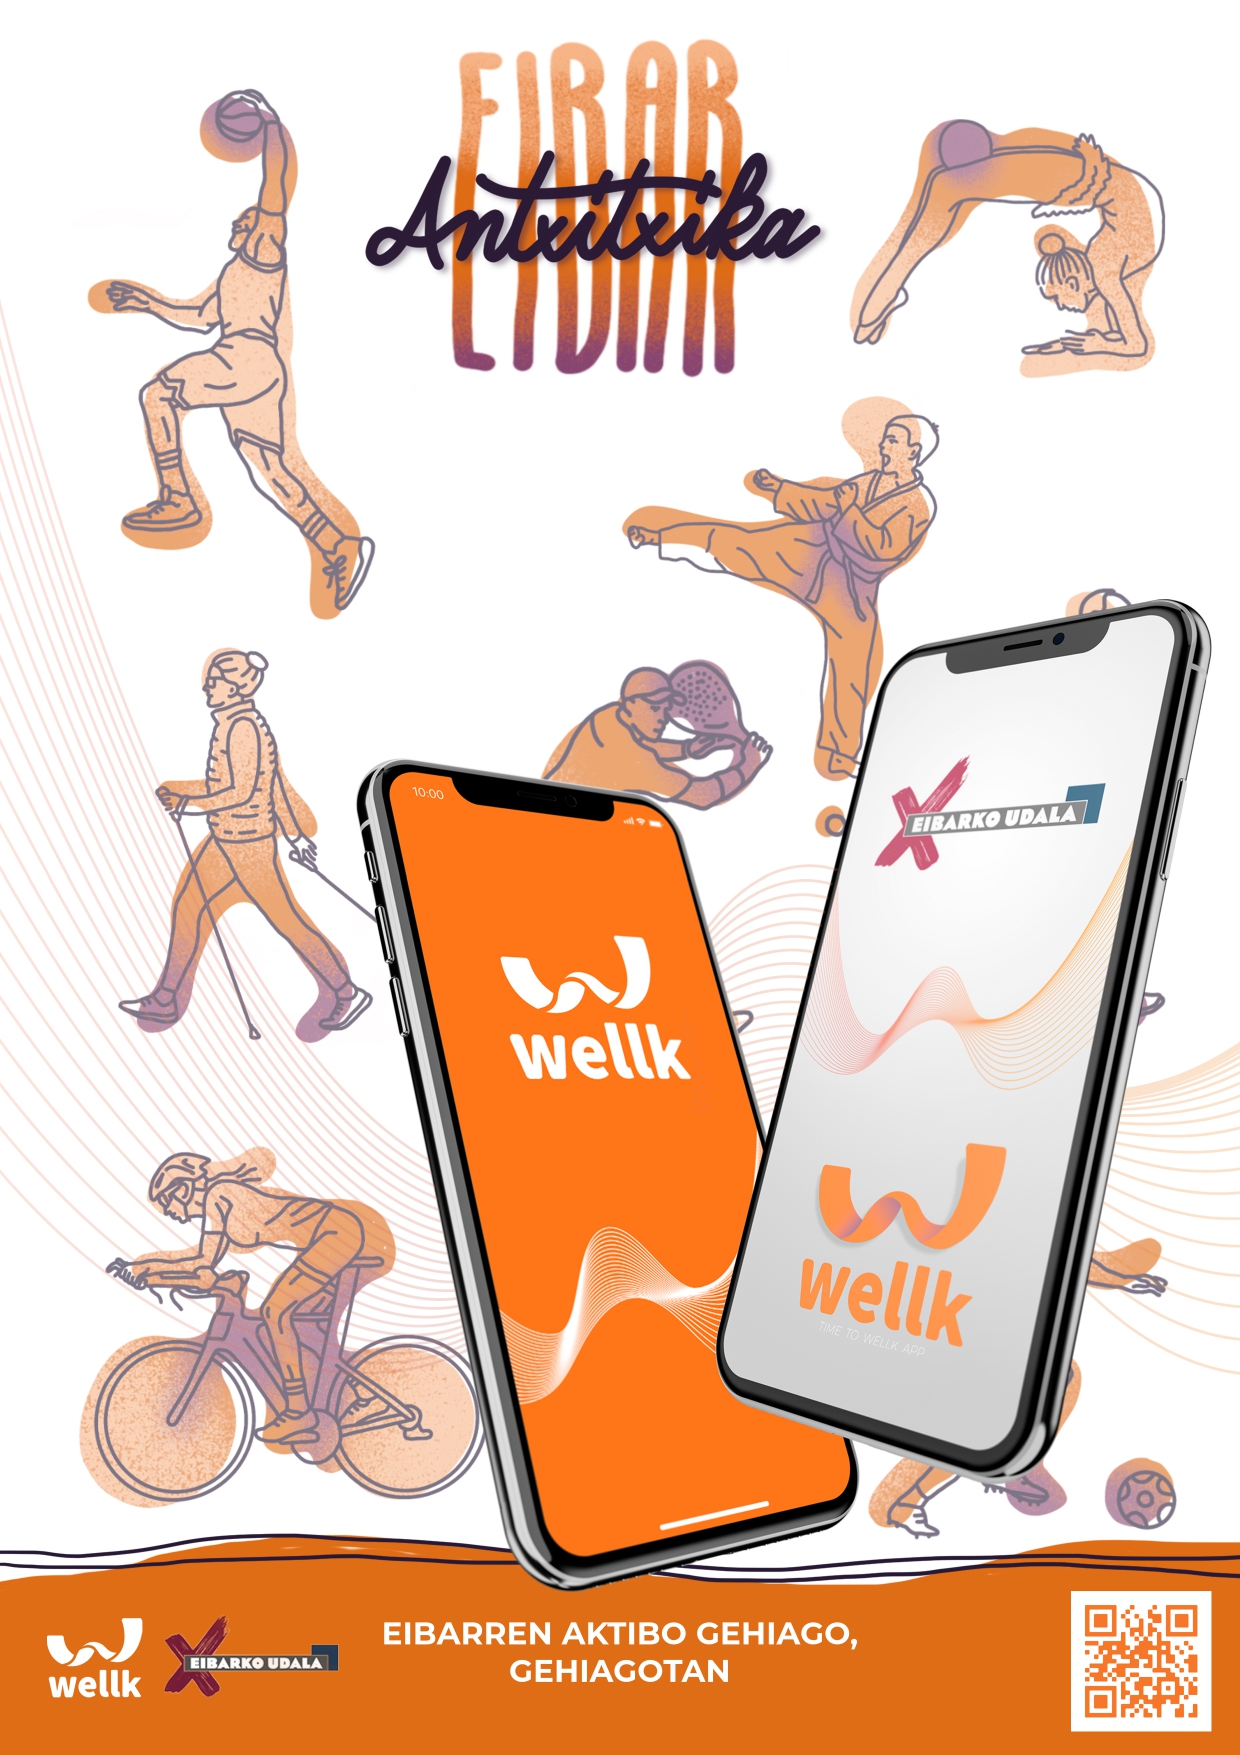 Disponible para su descarga la nueva app 'Wellk' en App Store y Google Play Store